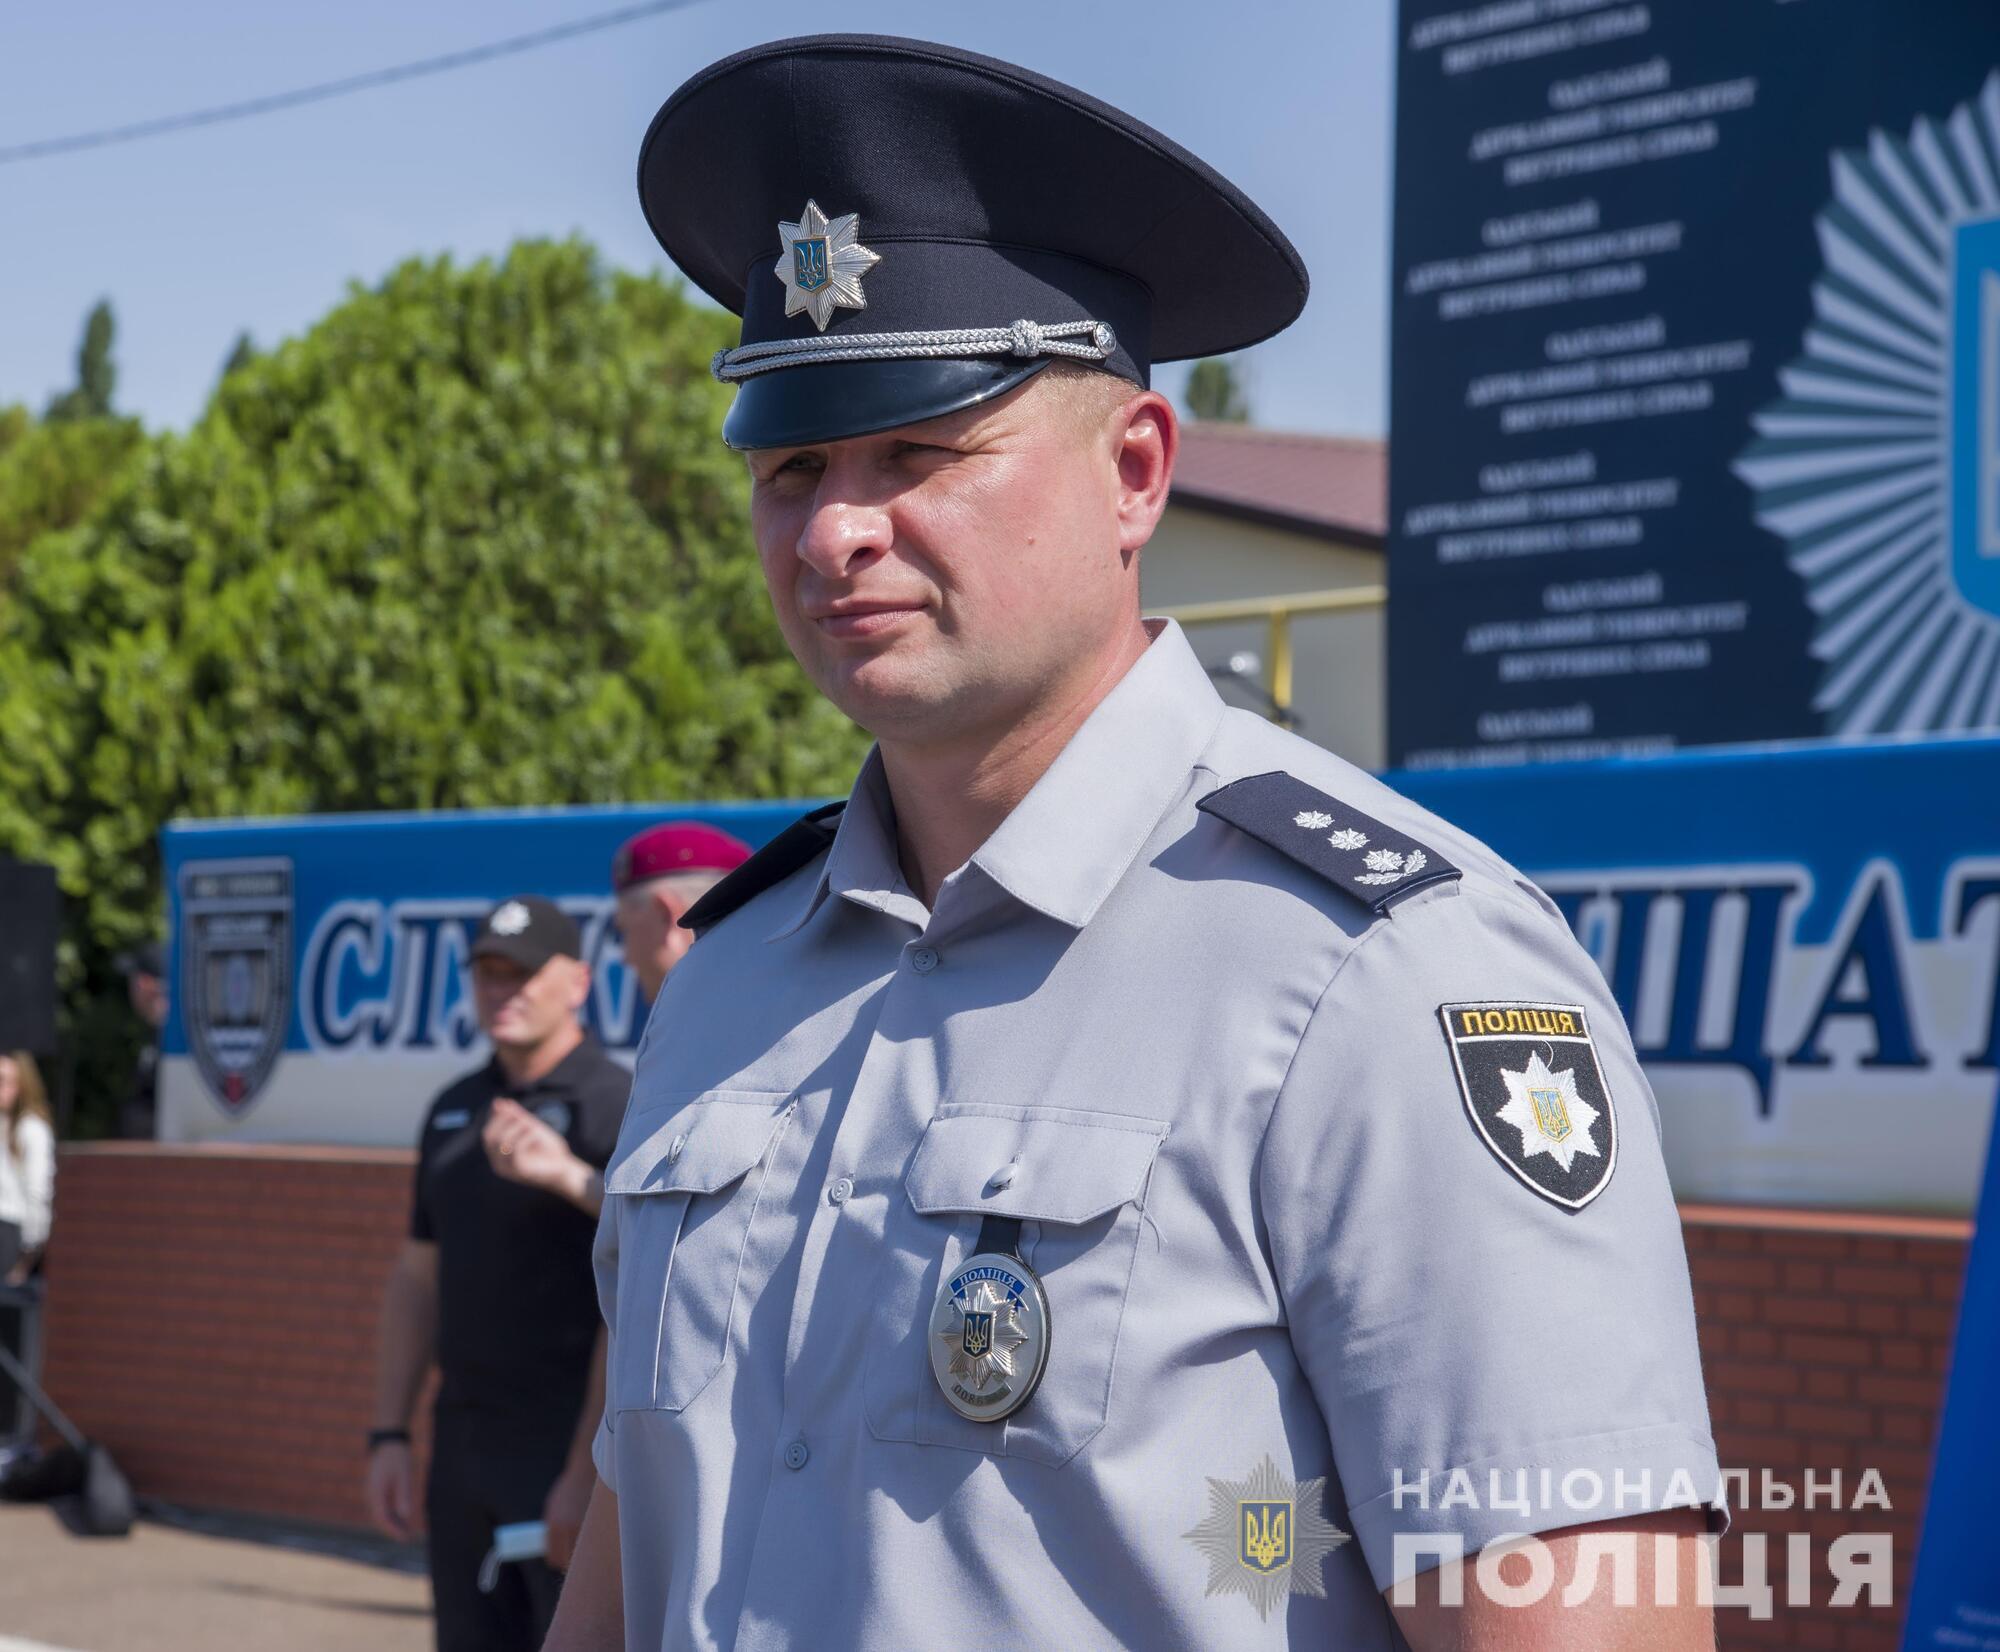 Спецпризначенці поліції Одещини вивчили європейську модель забезпечення публічної безпеки і порядку під час проведення масових заходів